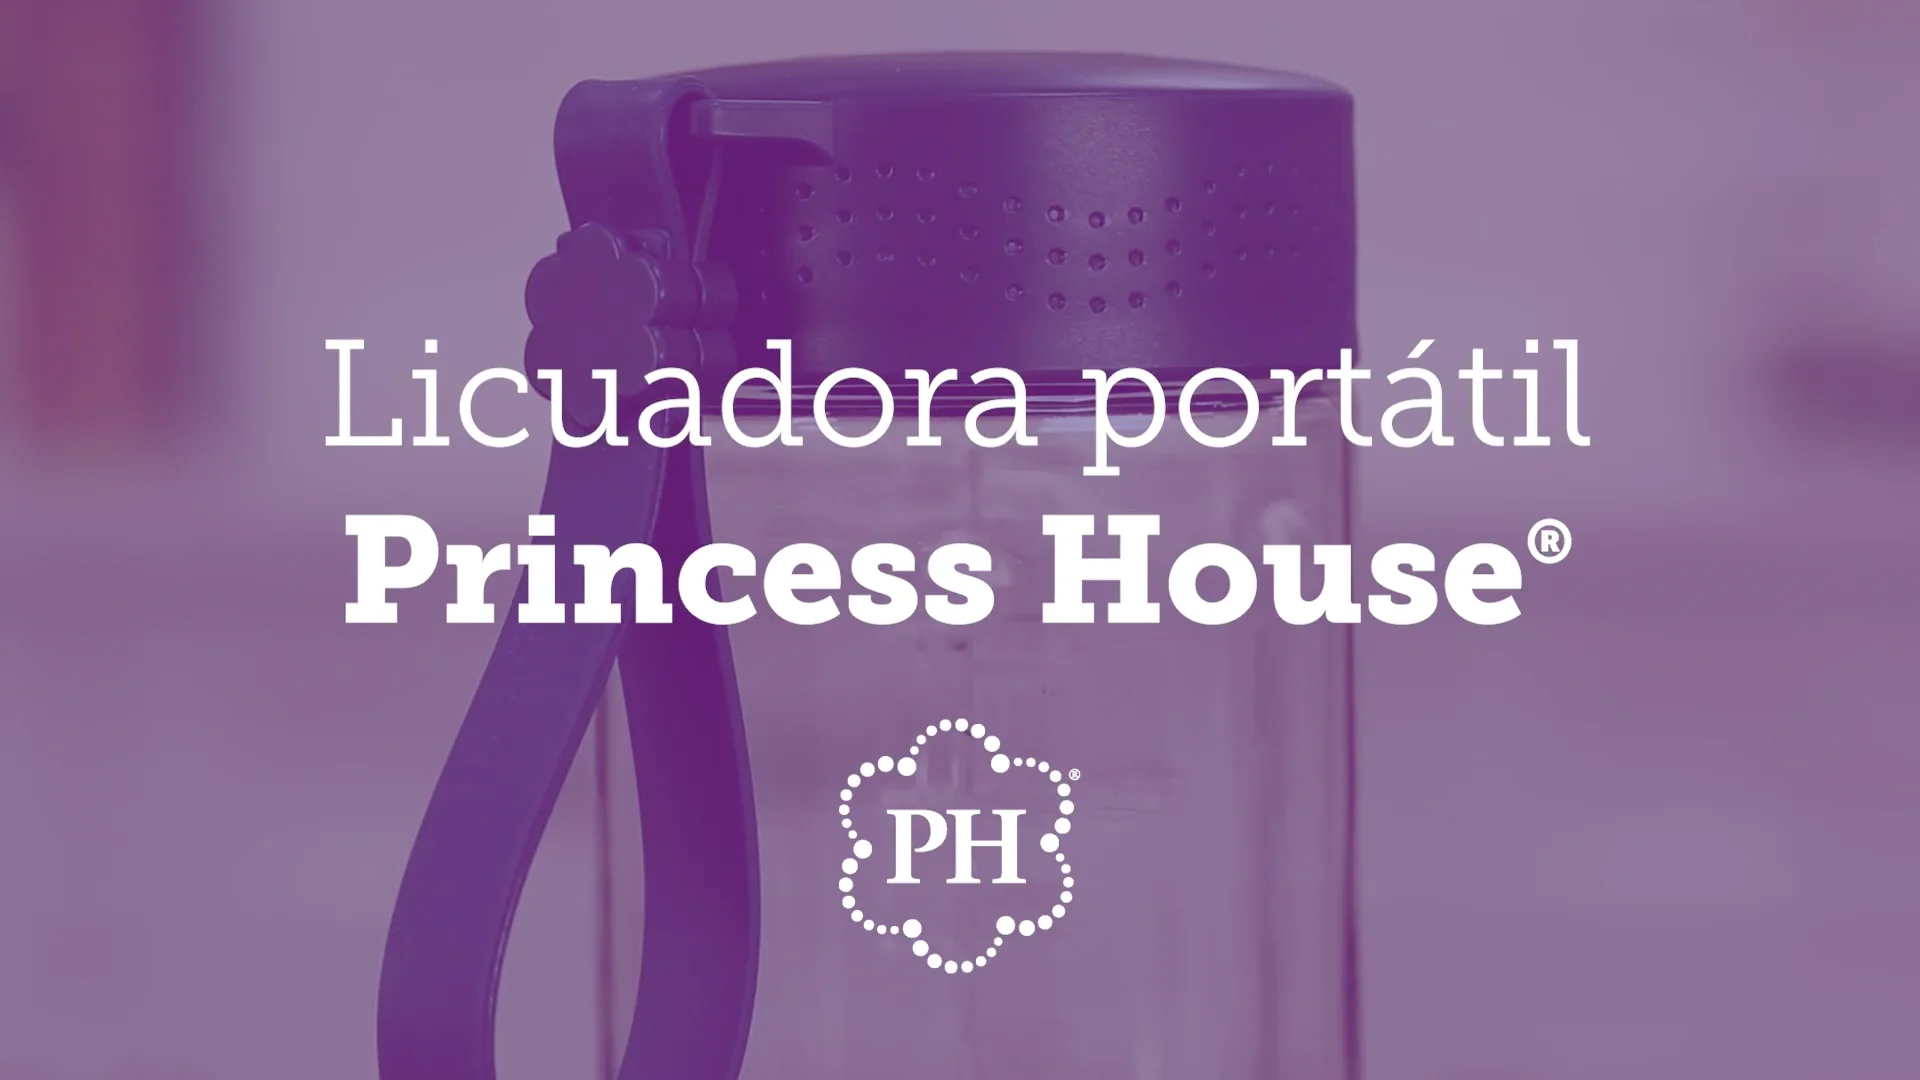 Sofrito - Licuadora de alta potencia - Princess House on Vimeo